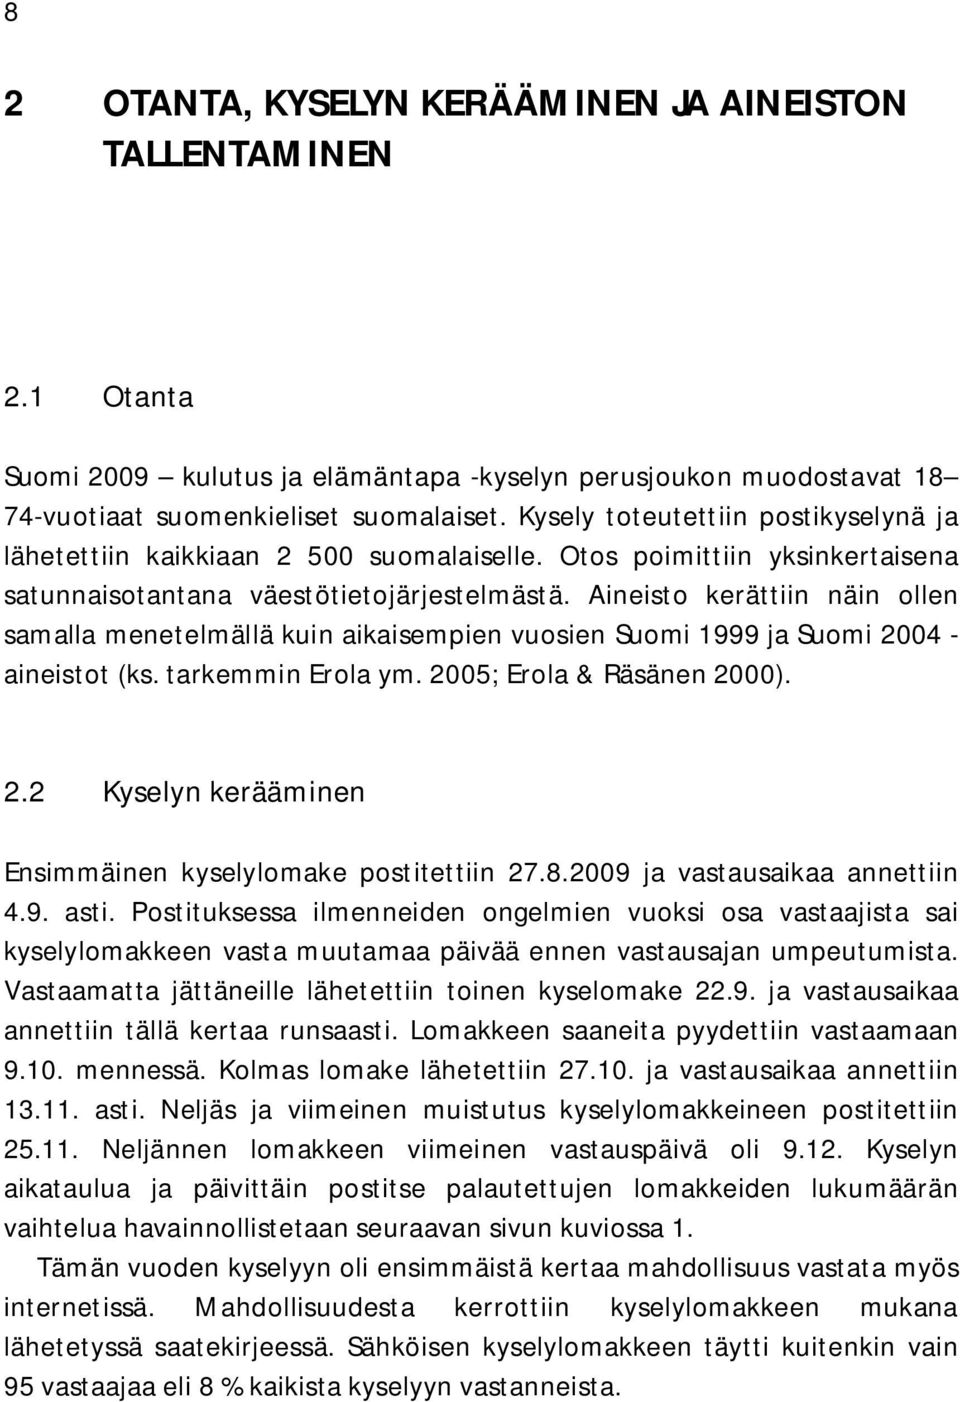 Aineisto kerättiin näin ollen samalla menetelmällä kuin aikaisempien vuosien Suomi 1999 ja Suomi 2004 - aineistot (ks. tarkemmin Erola ym. 2005; Erola & Räsänen 2000). 2.2 Kyselyn kerääminen Ensimmäinen kyselylomake postitettiin 27.